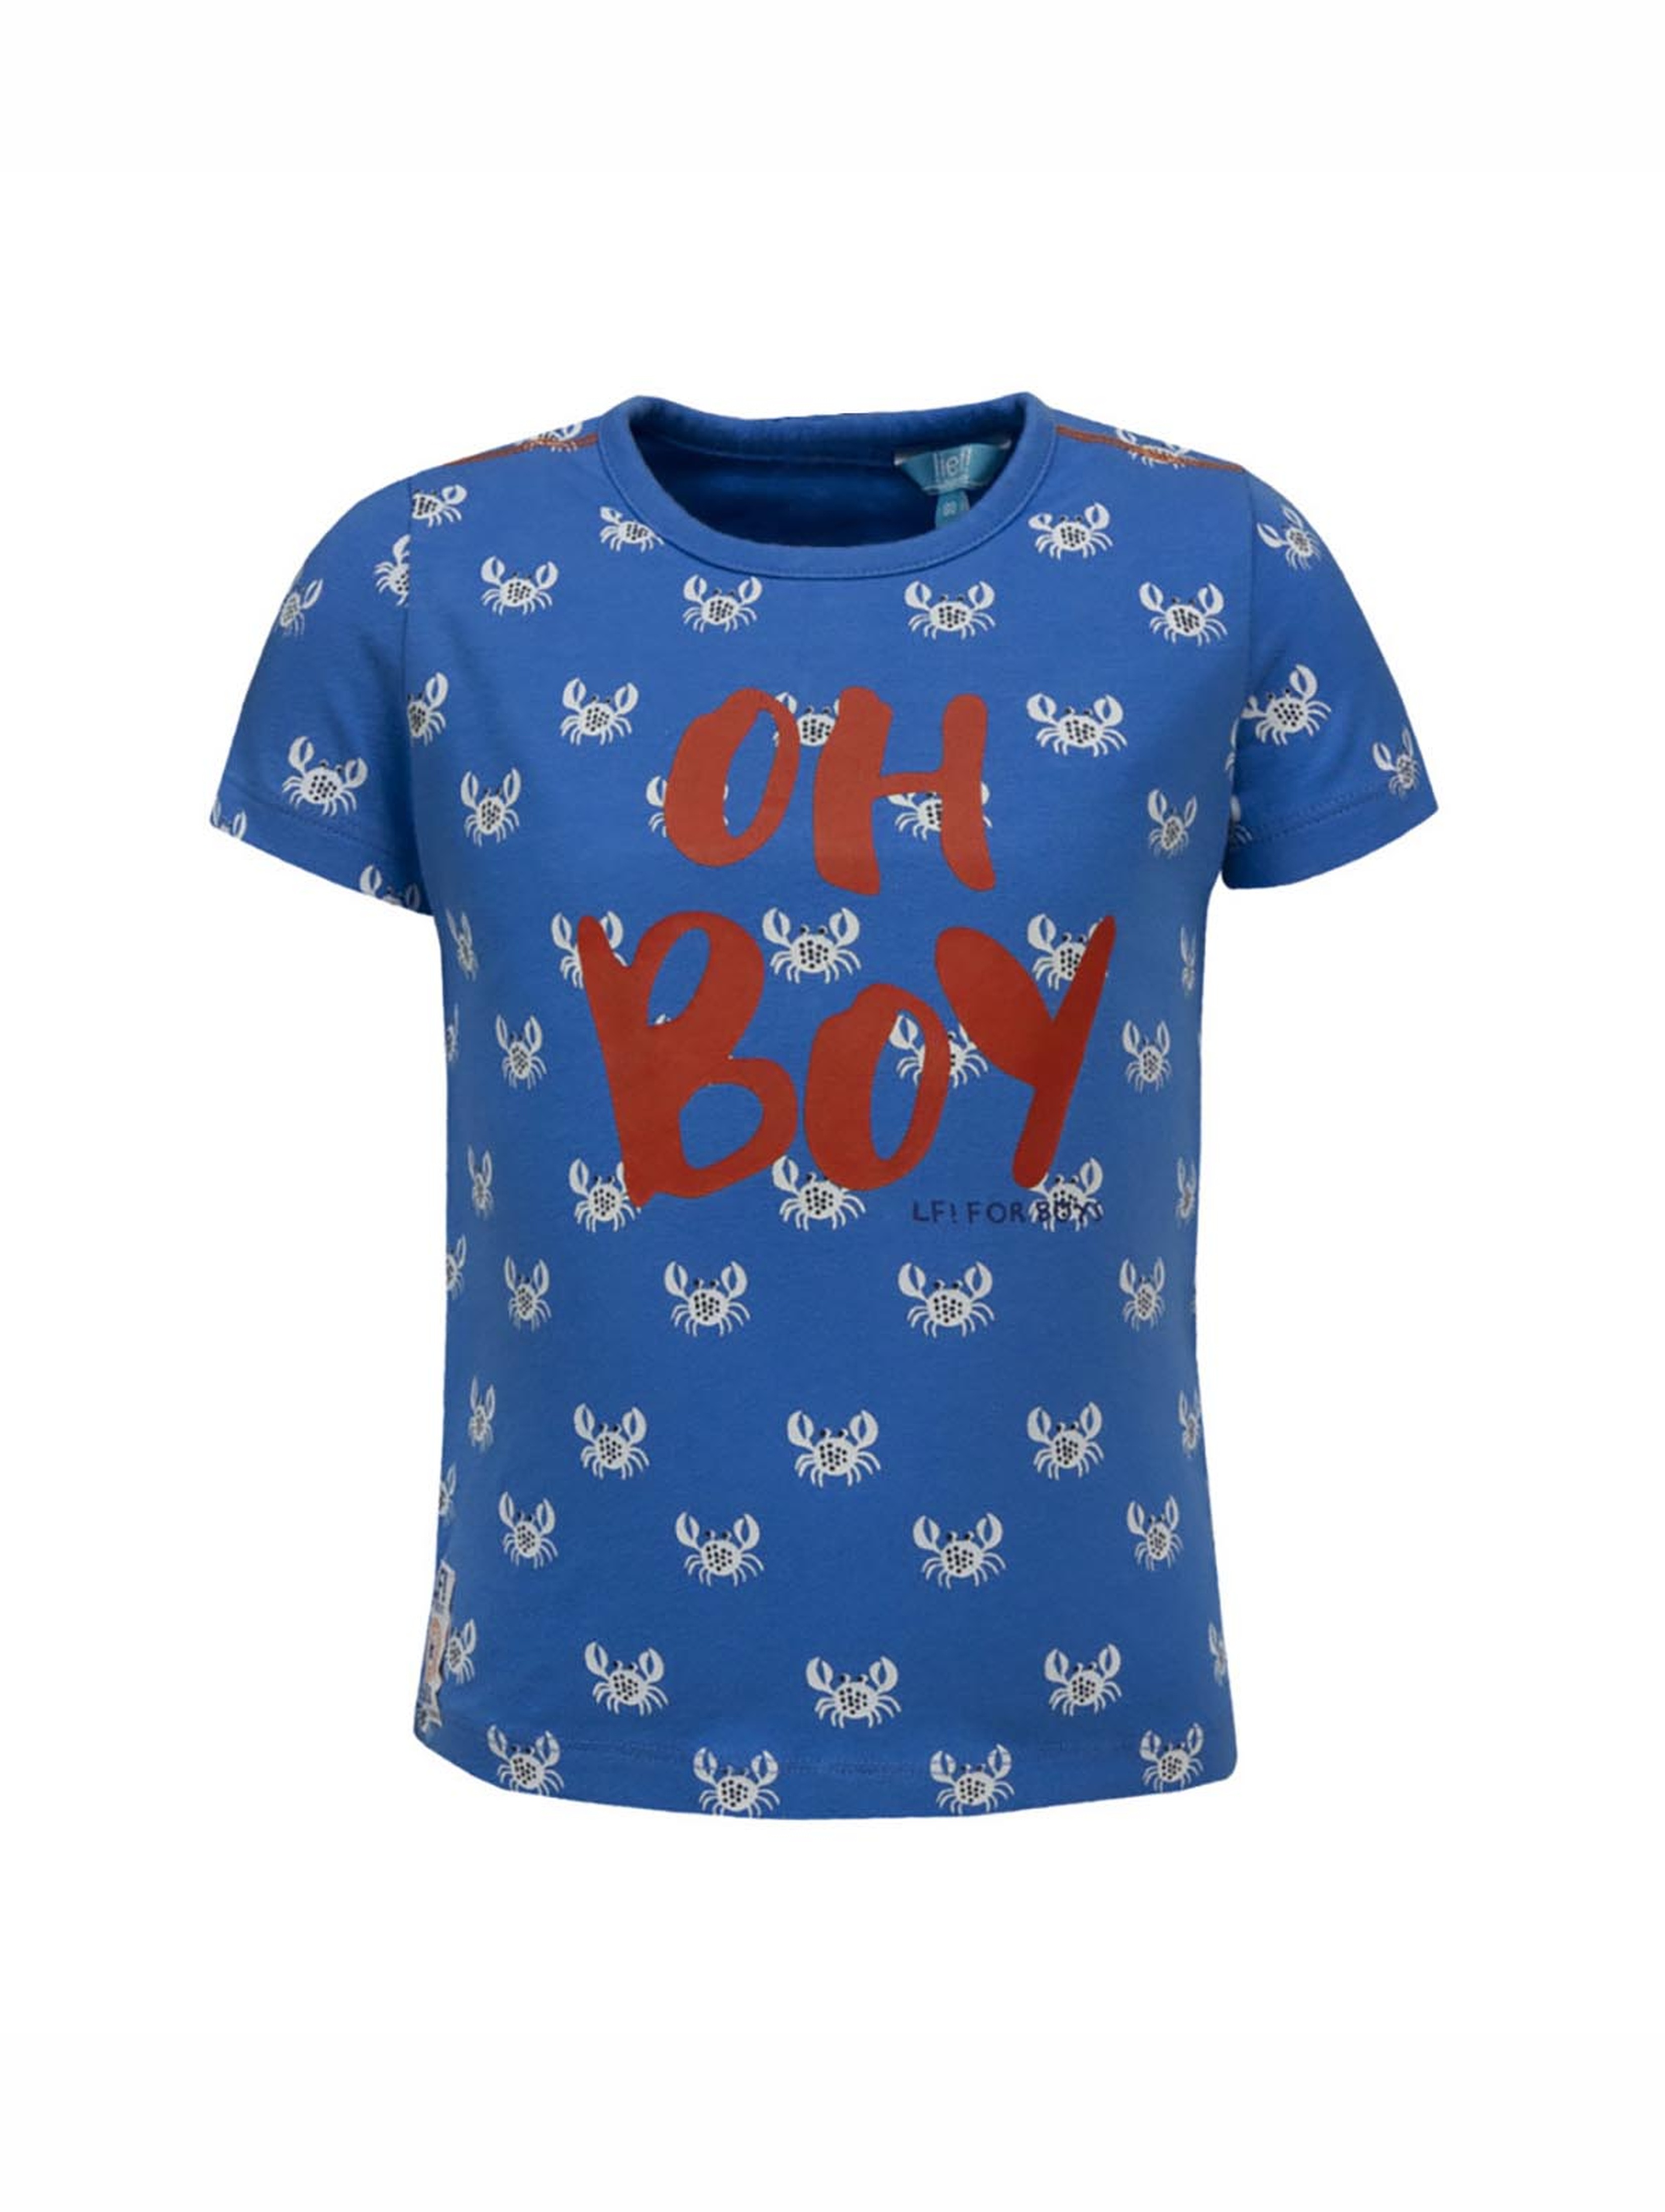 T-shirt chłopięcy, niebieski, Oh Boy, Lief